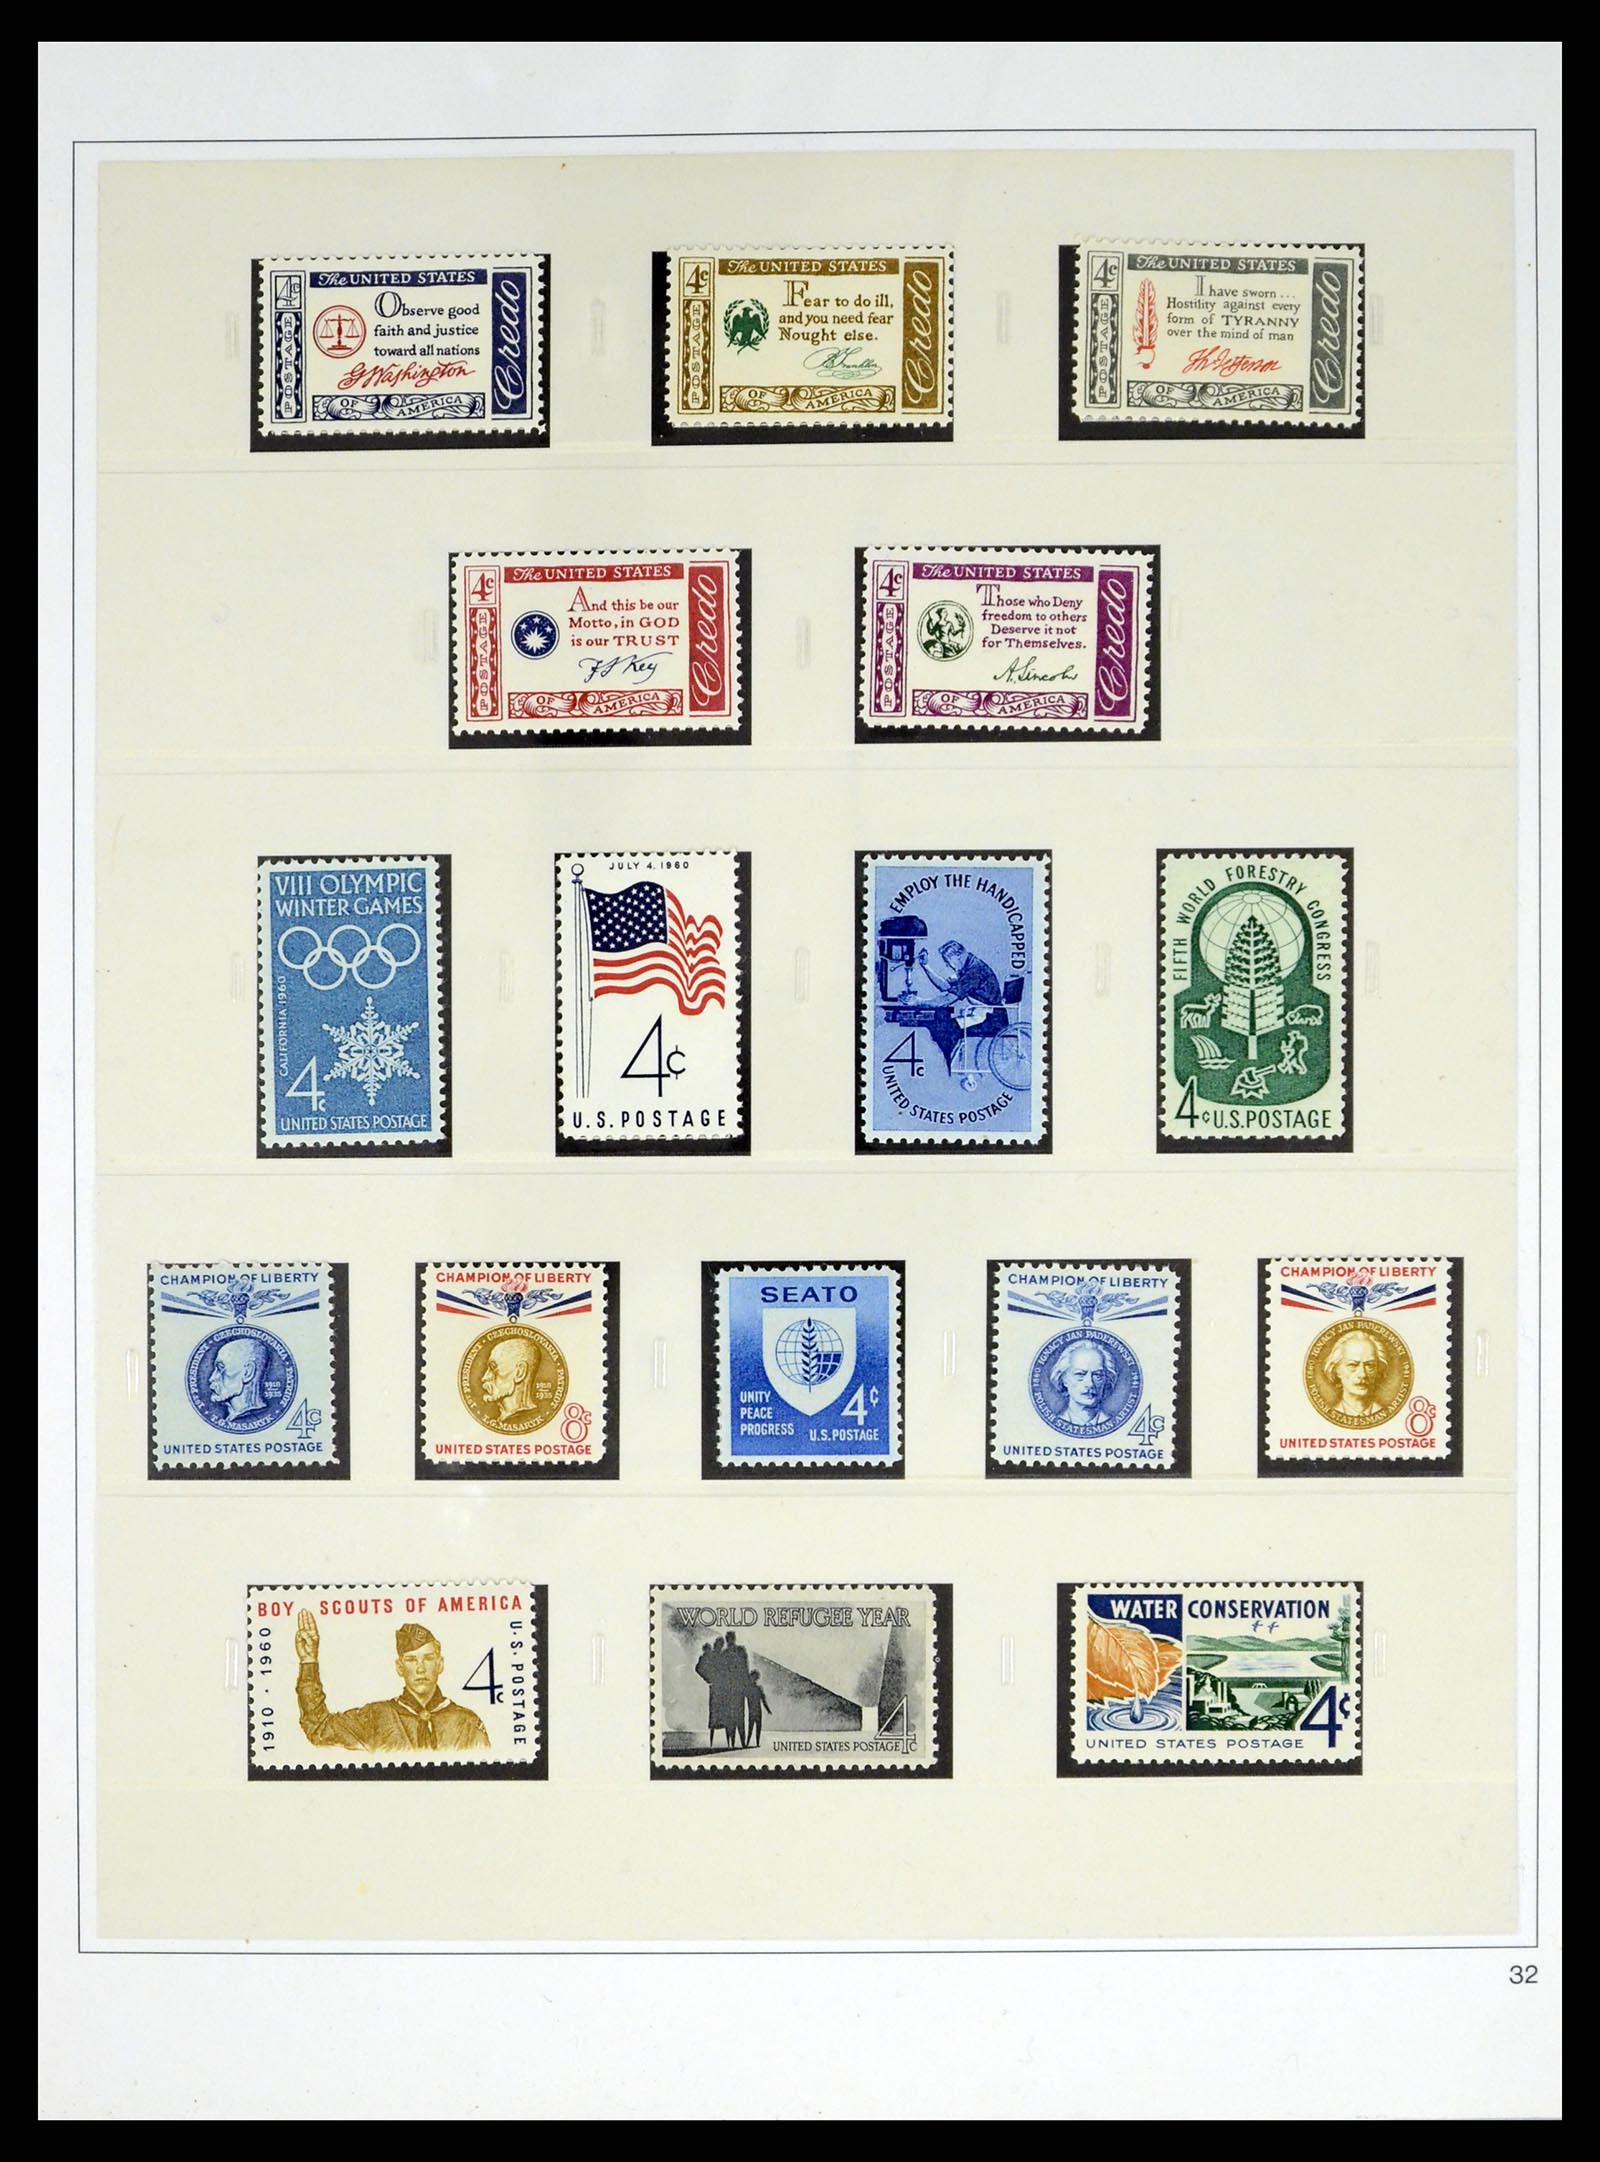 37551 072 - Stamp collection 37551 USA 1851-2001.